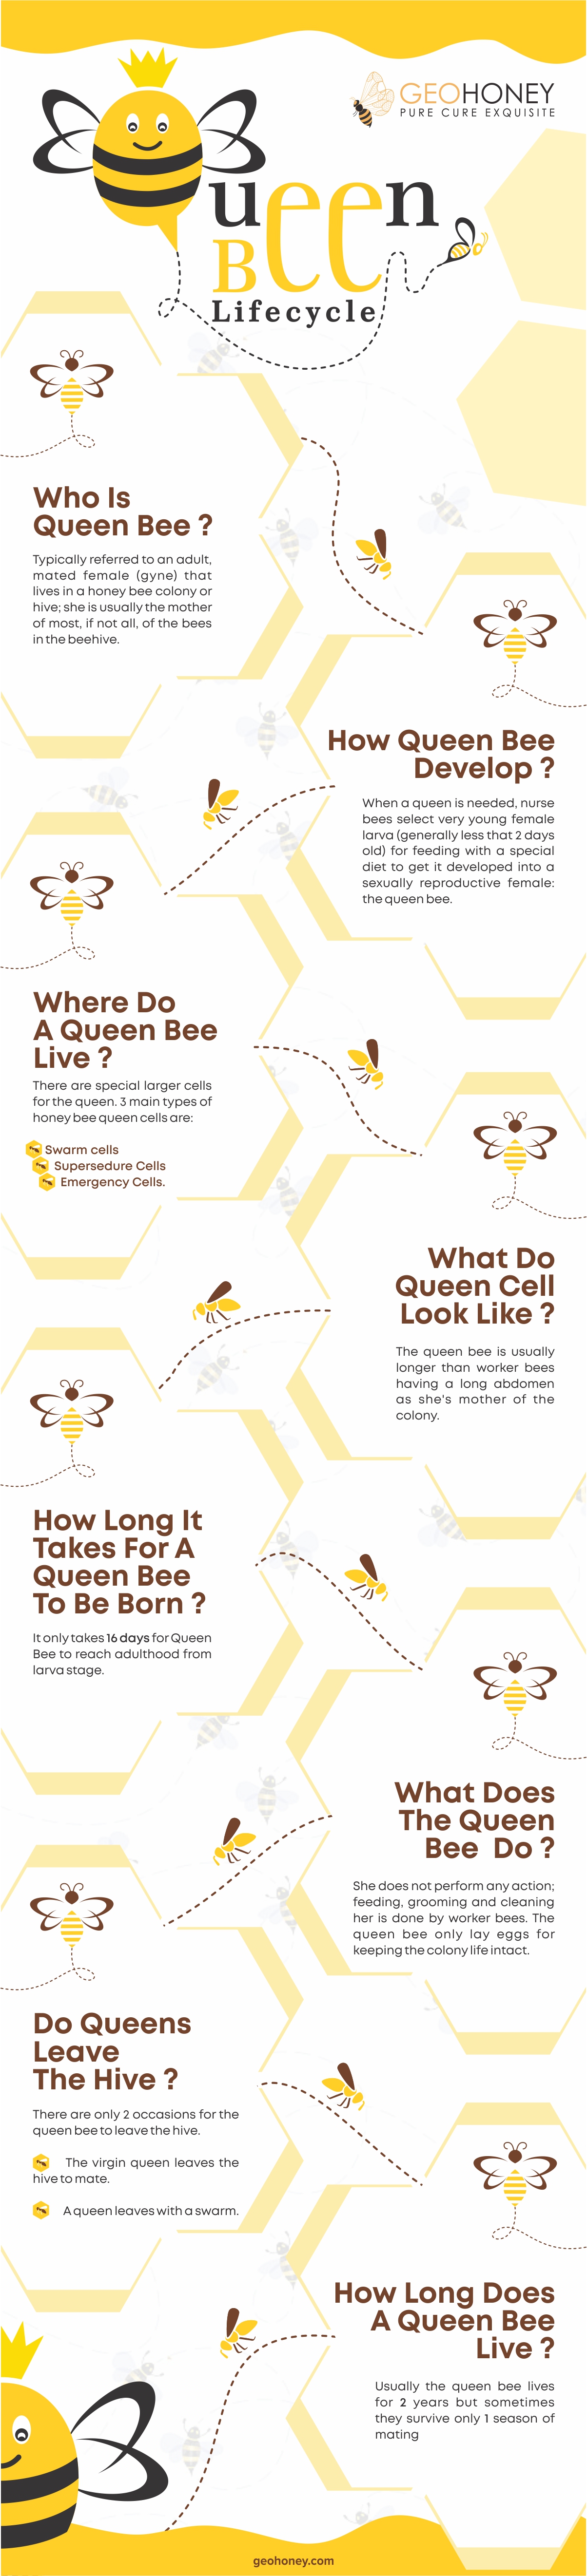 Queen bee lifecycle - Geohoney